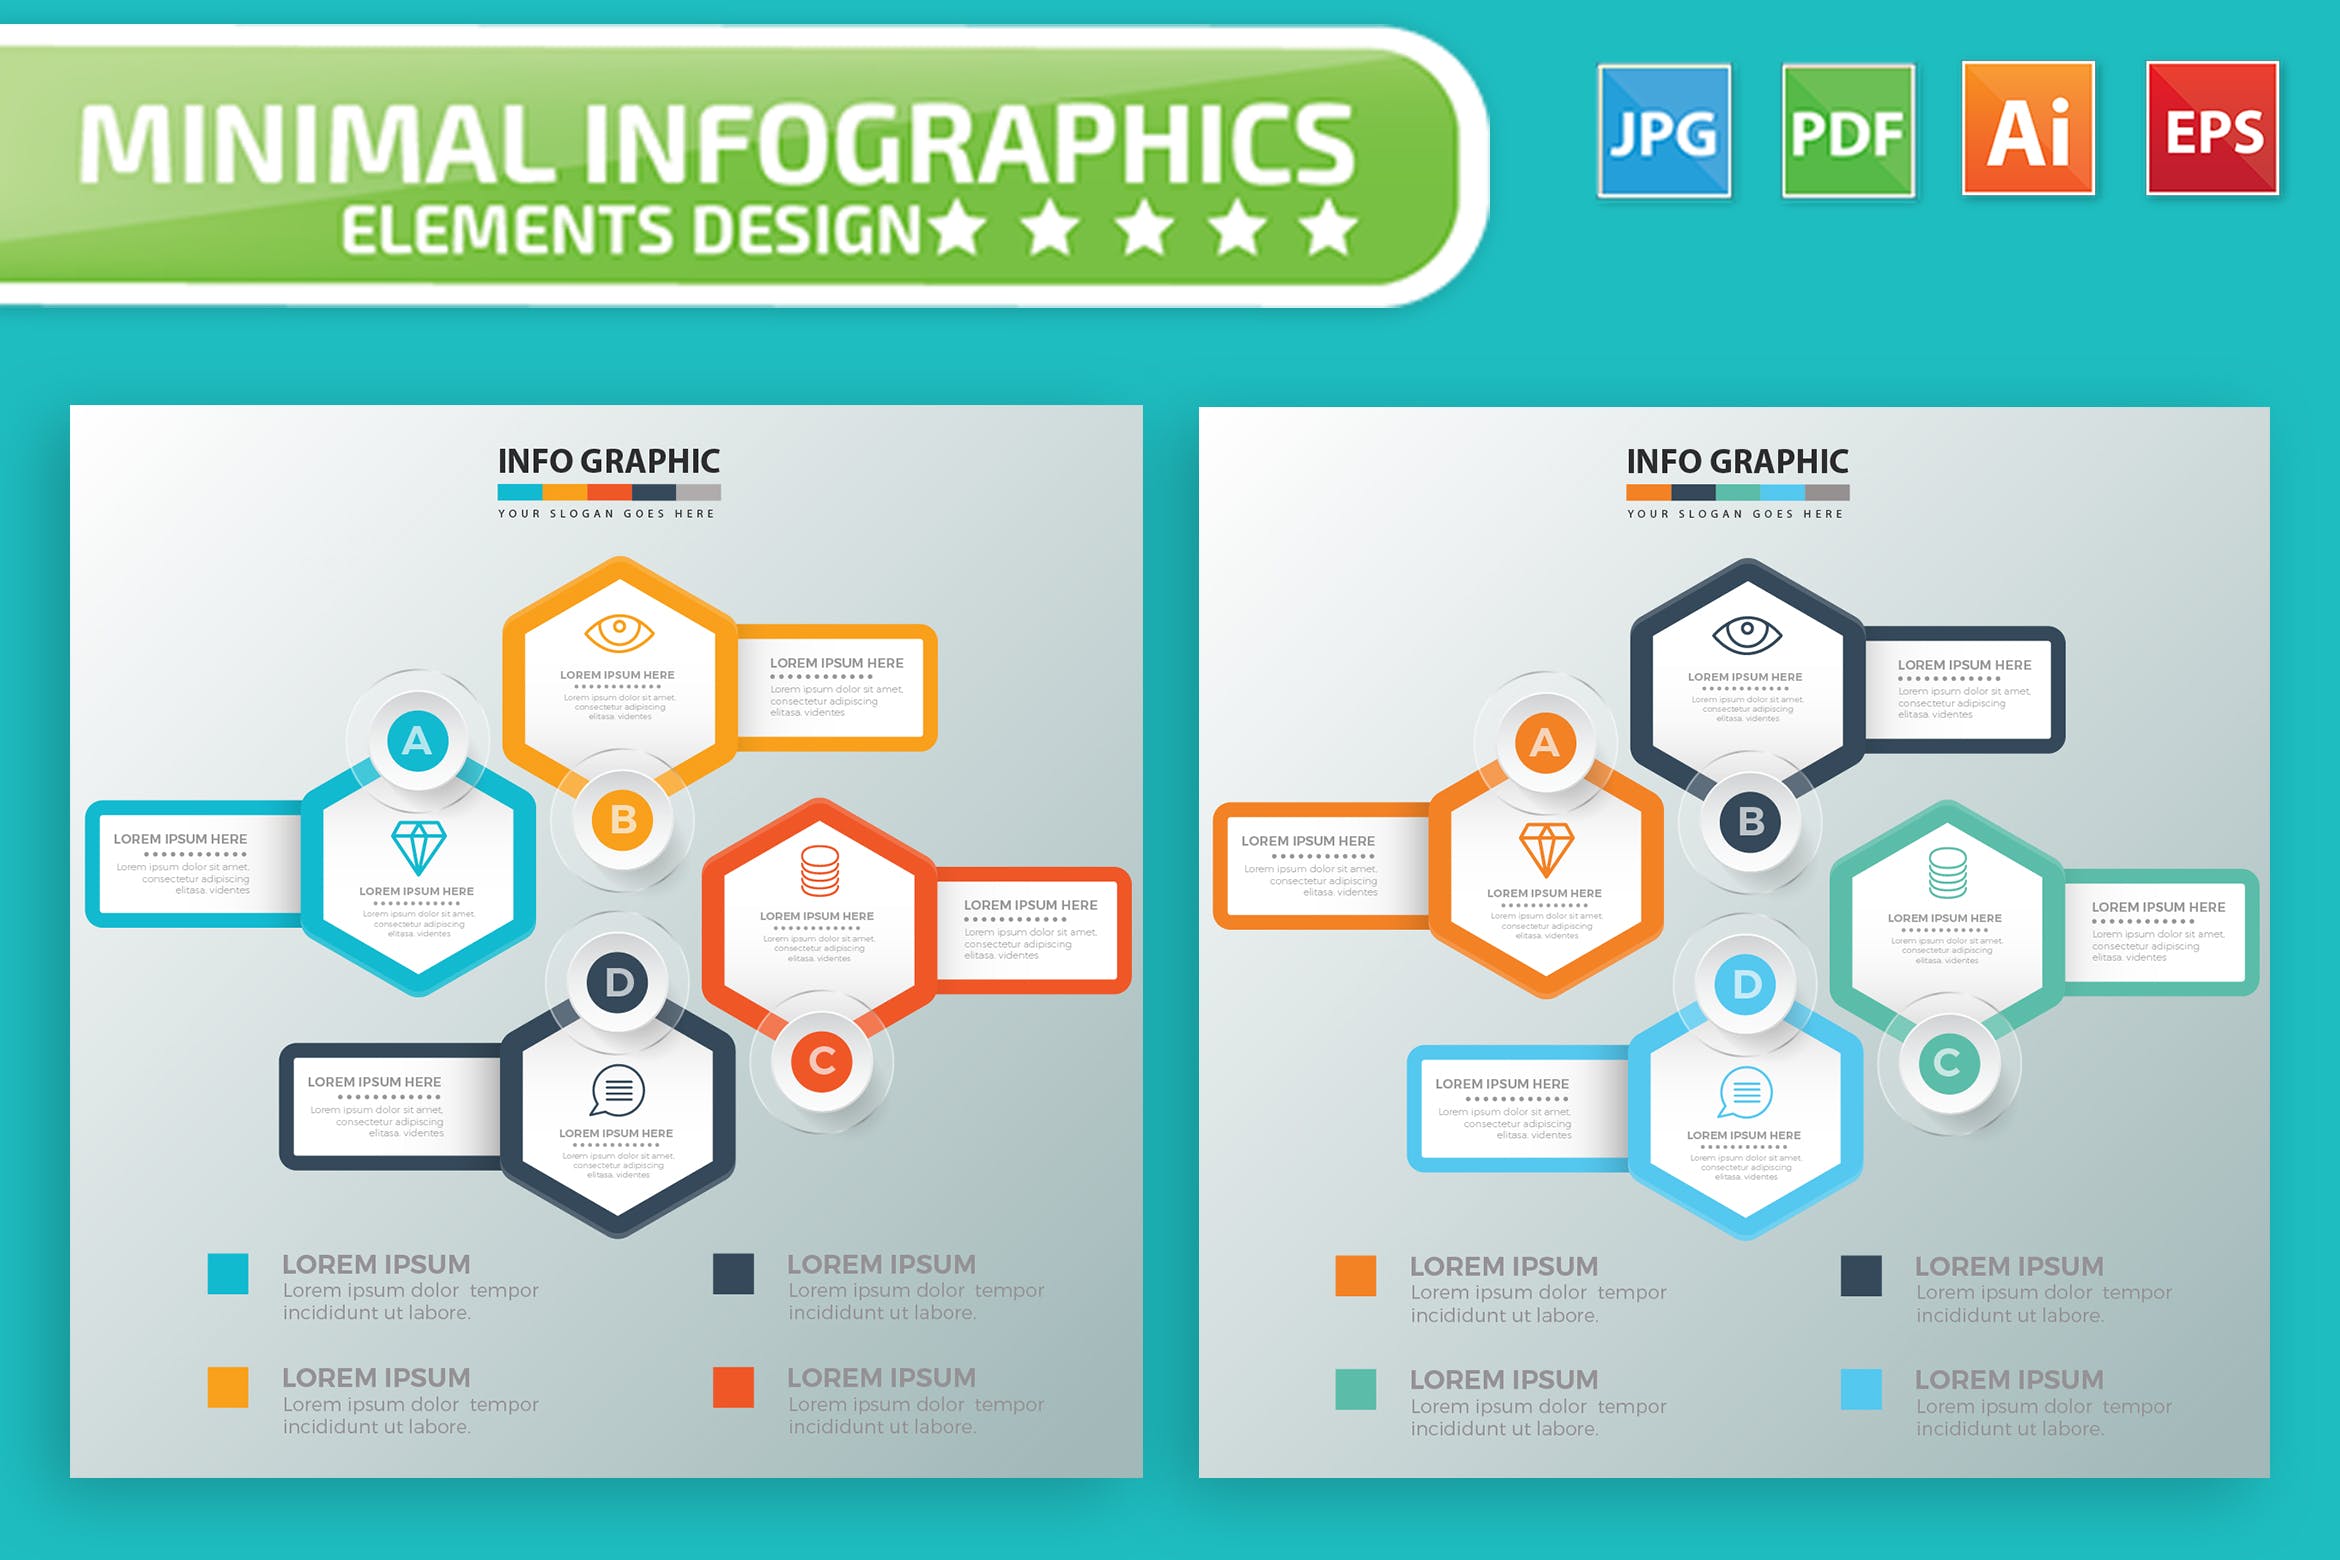 要点说明/重要特征信息图表矢量图形16图库精选素材v7 Infographic Elements Design插图